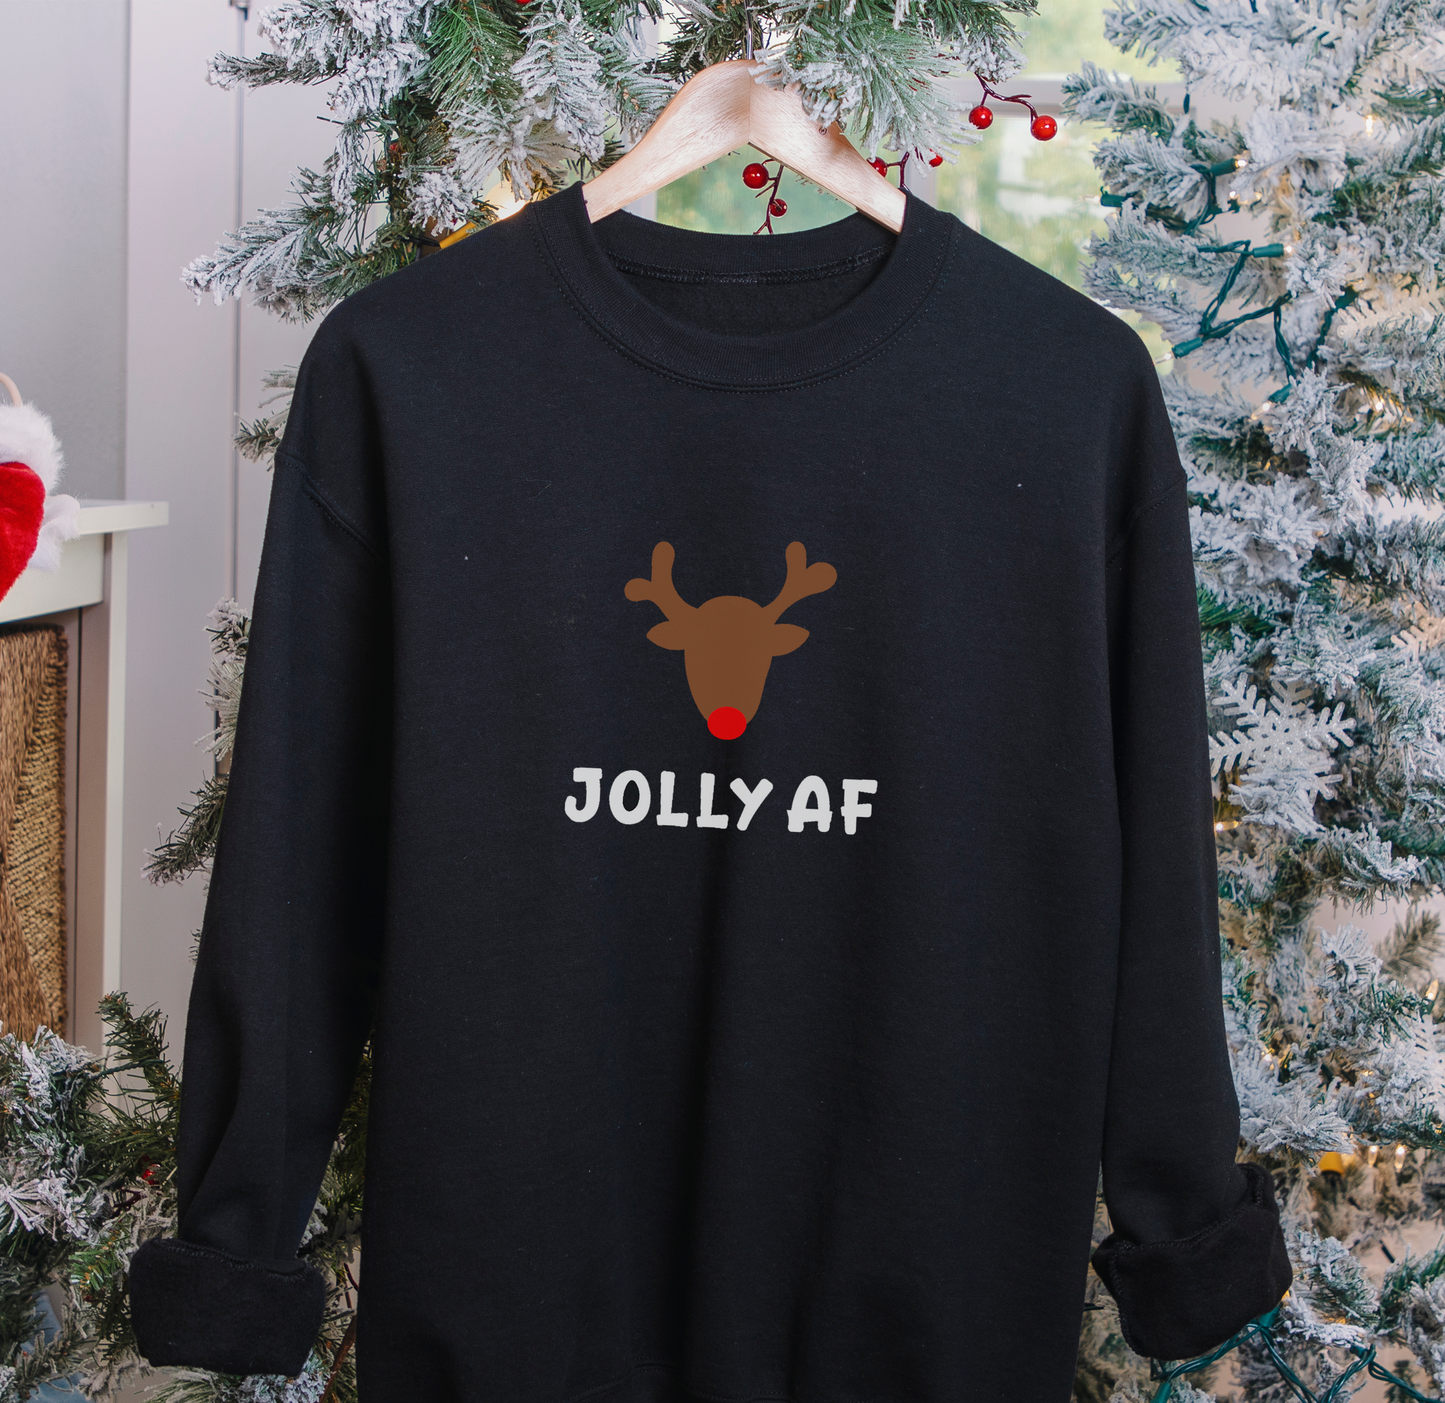 Jolly Af Christmas Jumper